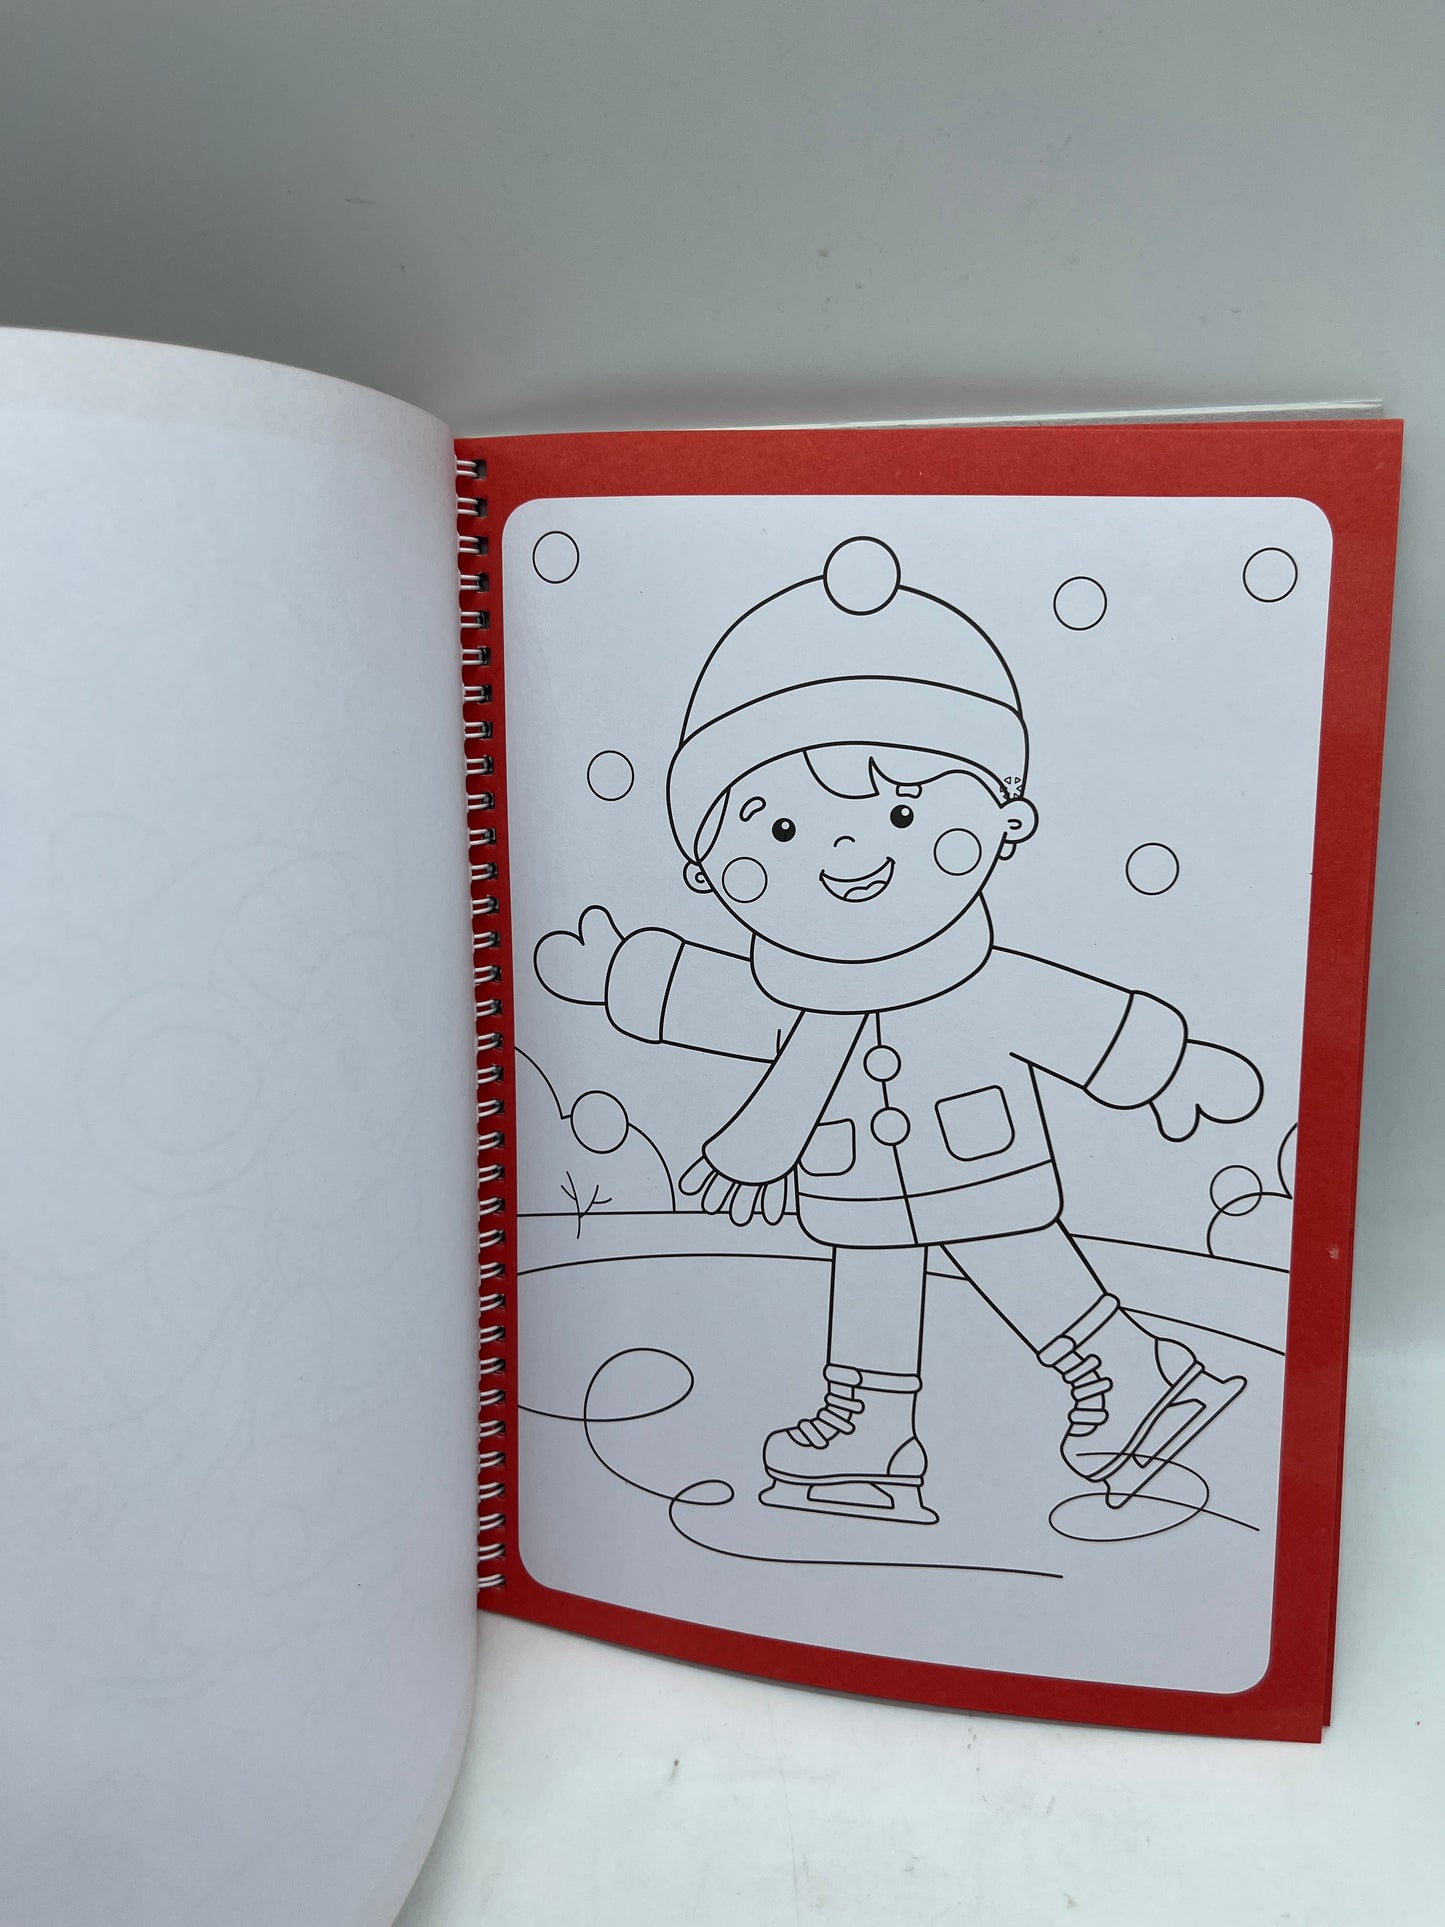 Livre d’activité Colorie avec le Père Noël 🎅🏾 mon beau coloriage avec  ces 4 feutres et gommettes Neuf